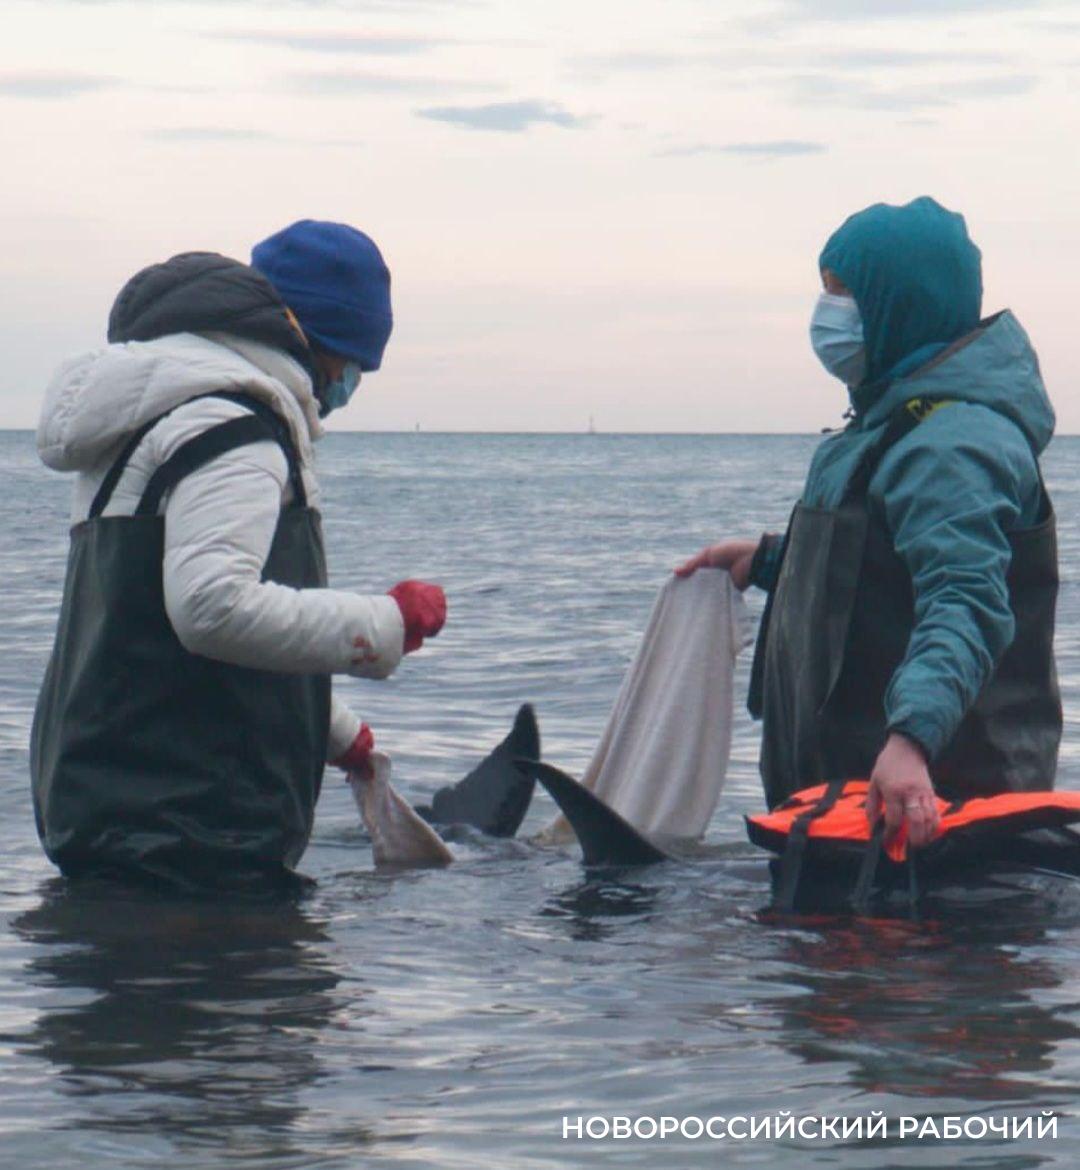 Начался сезон выброса дельфинов. Как новороссийцам спасать их правильно?